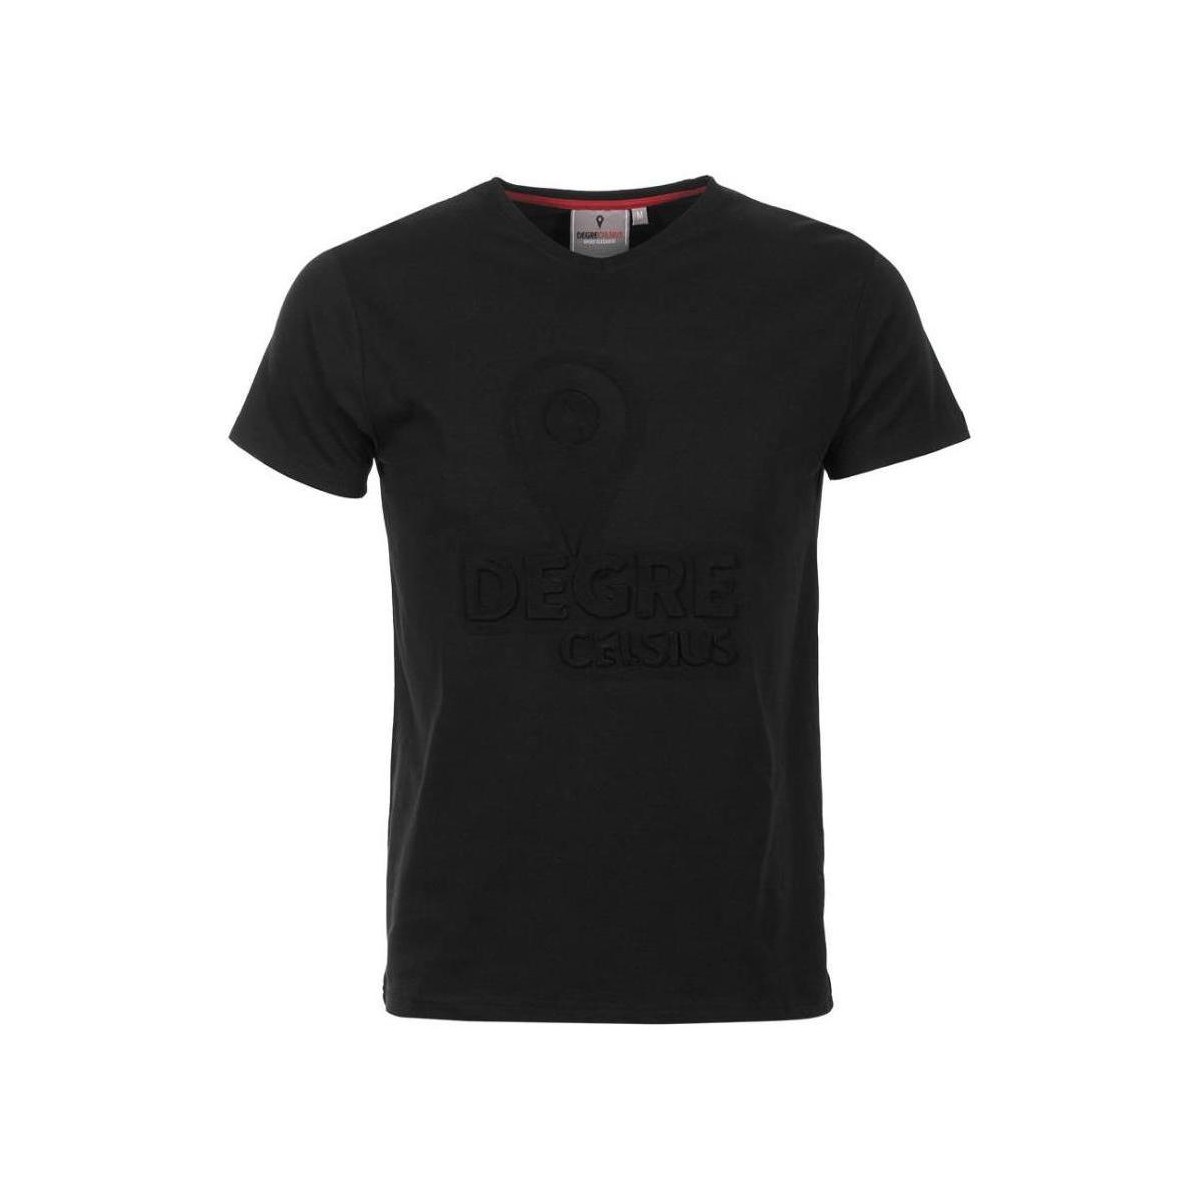 Textiel Heren T-shirts korte mouwen Degré Celsius T-shirt manches courtes homme CABOS Zwart